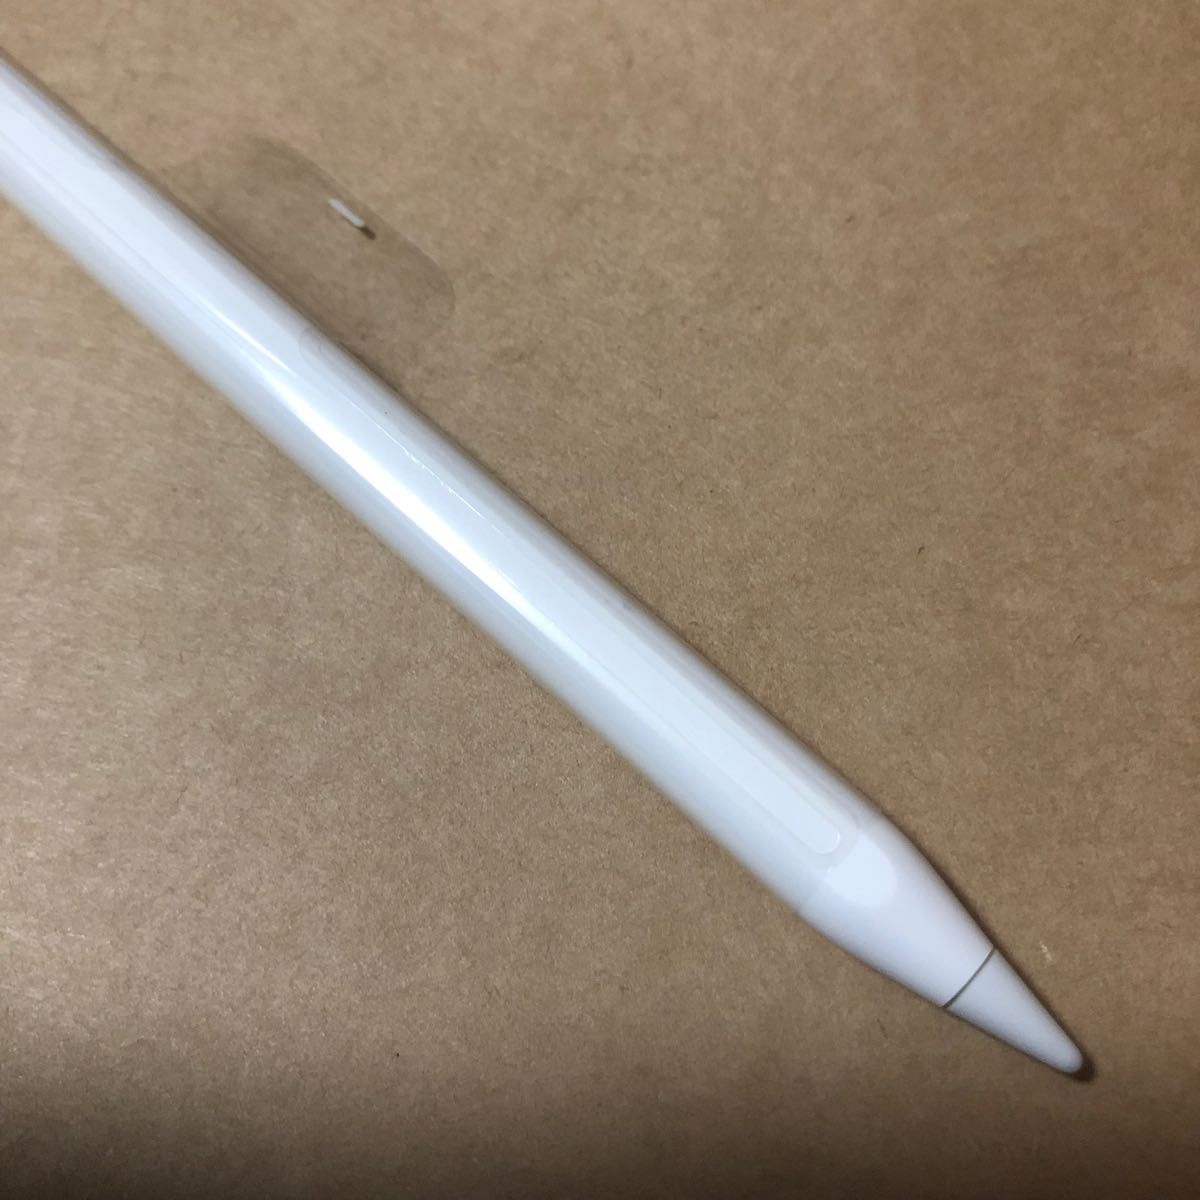 新品未使用・純正品 Apple Pencil アップルペンシル 第2世代(Apple公式